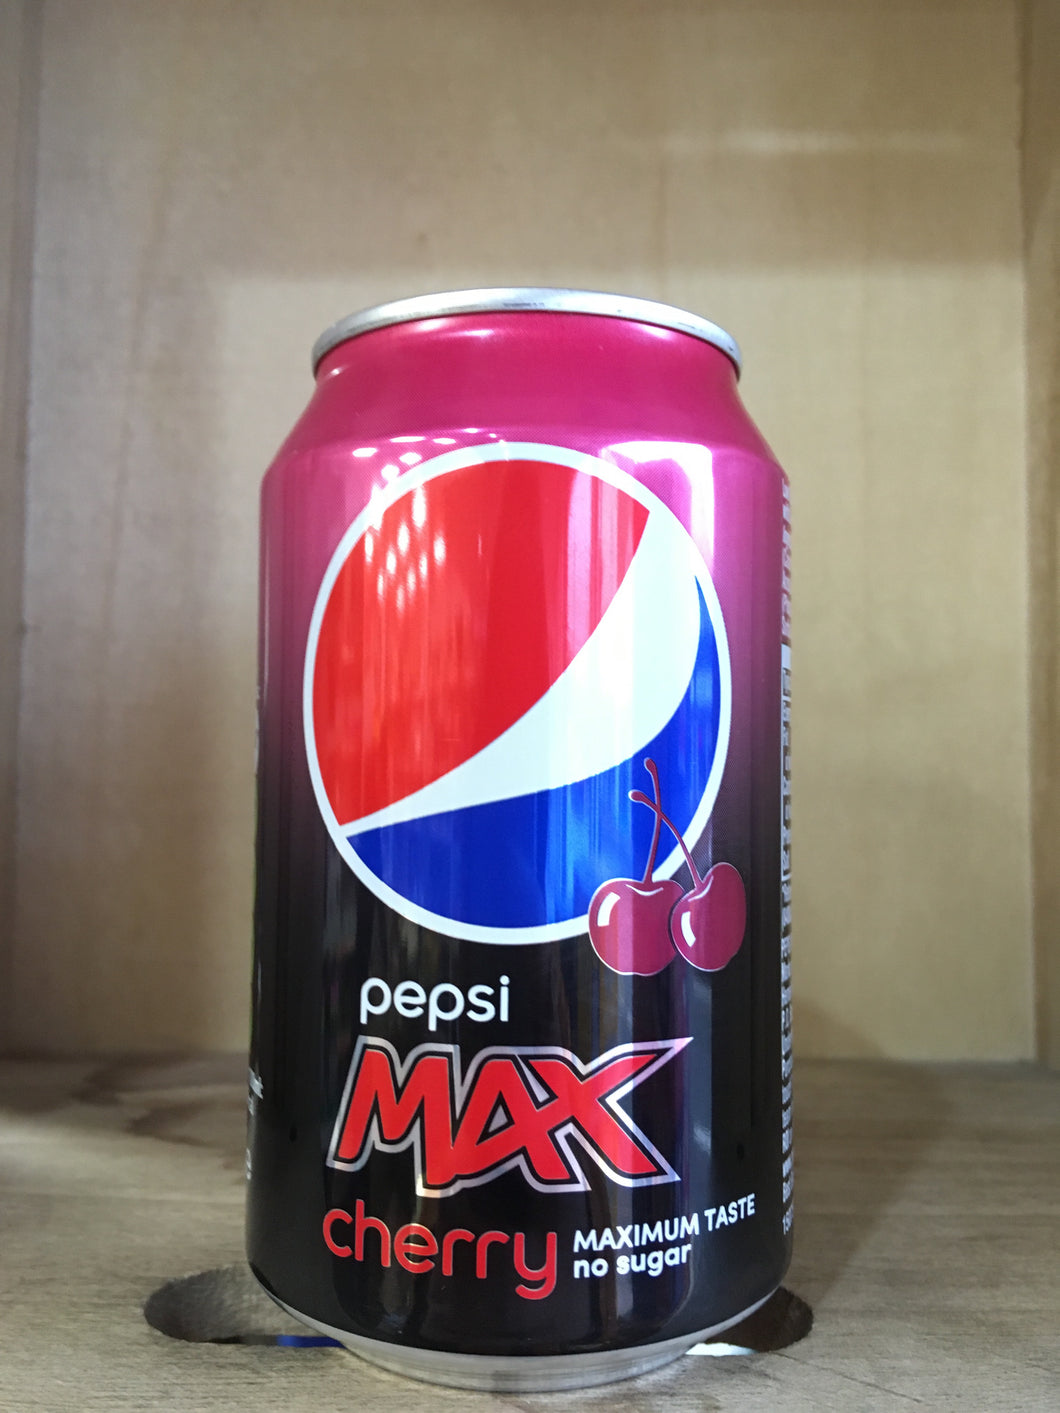 Pepsi Max Cherry Maximum Taste No Sugar 330ml